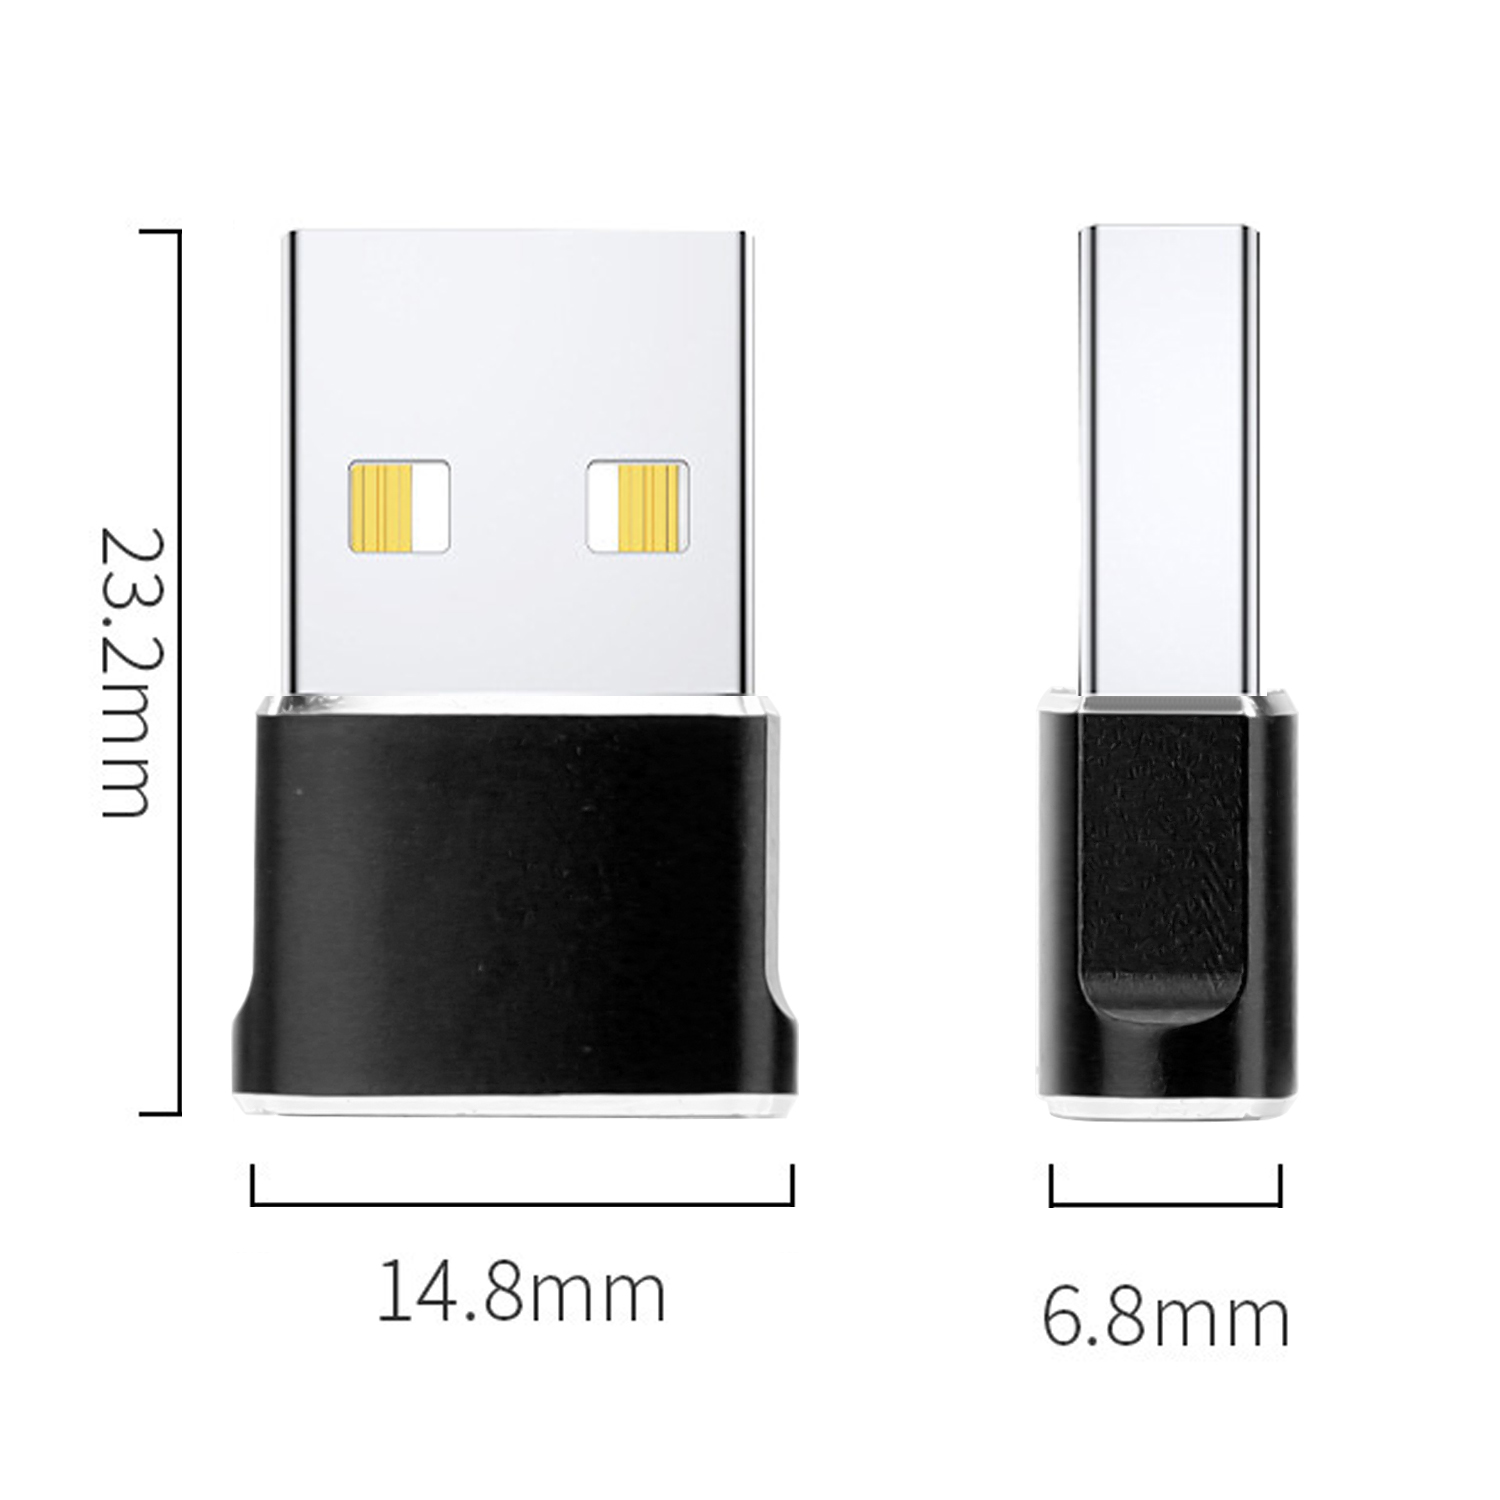 CADORABO USB Adapter USB C Konverter, Konverter auf USB USB SCHWARZ